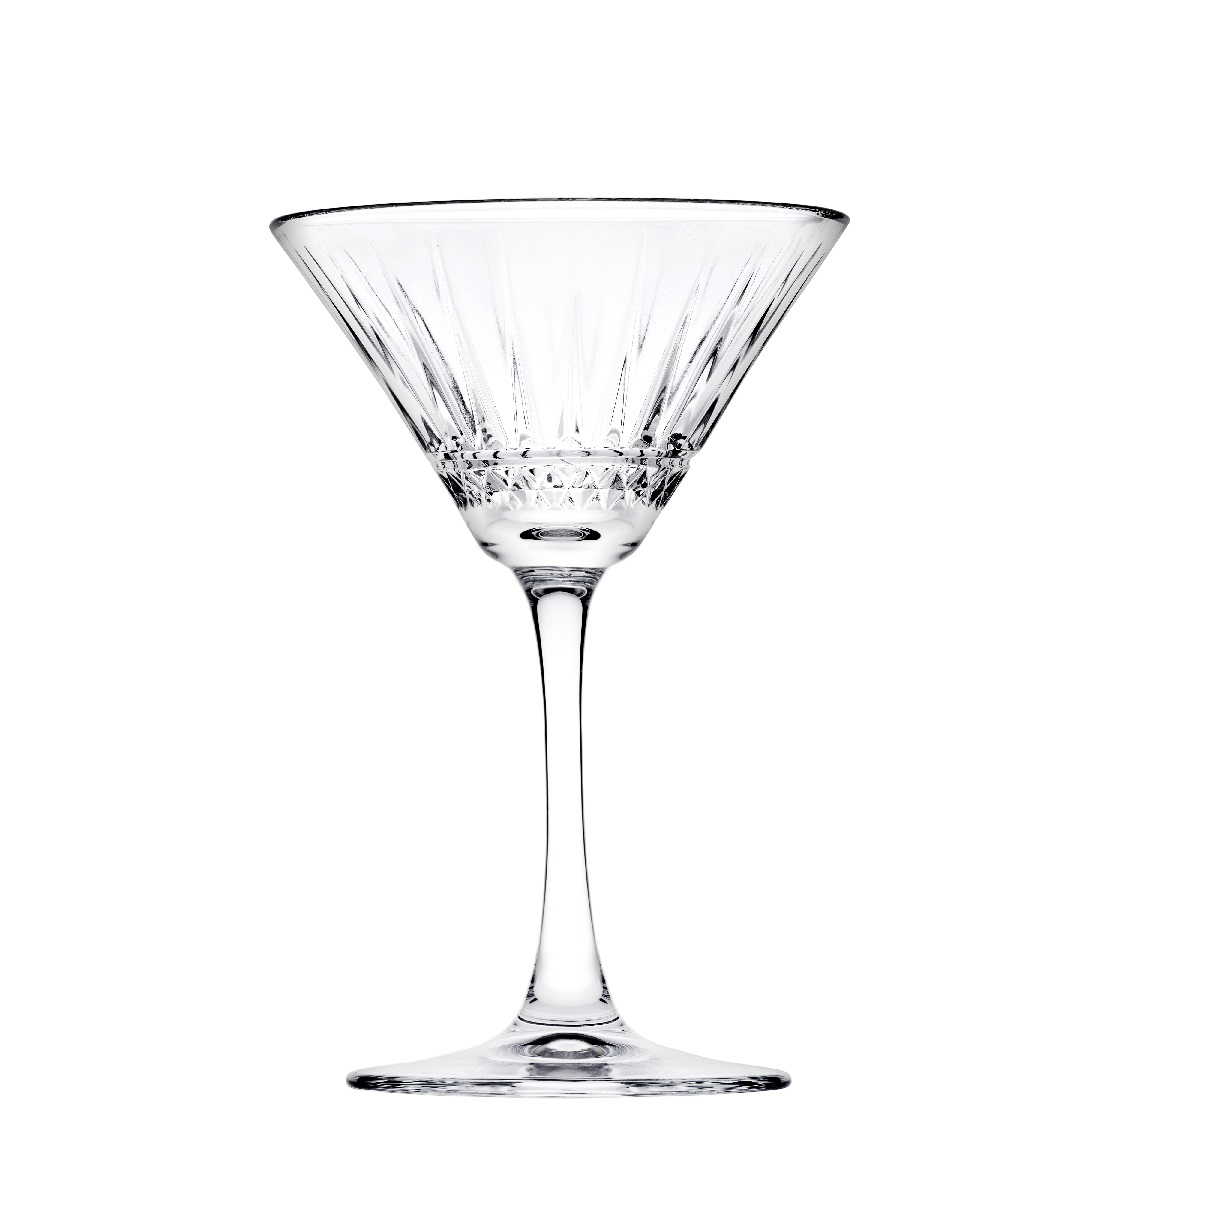 Ποτήρι Martini Γυάλινο Διάφανο Elysia ESPIEL 220ml-11,6x17,2εκ. SP440328G4 (Σετ 4 Τεμάχια) (Υλικό: Γυαλί, Χρώμα: Διάφανο , Μέγεθος: Κολωνάτο) - ESPIEL - SP440328G4